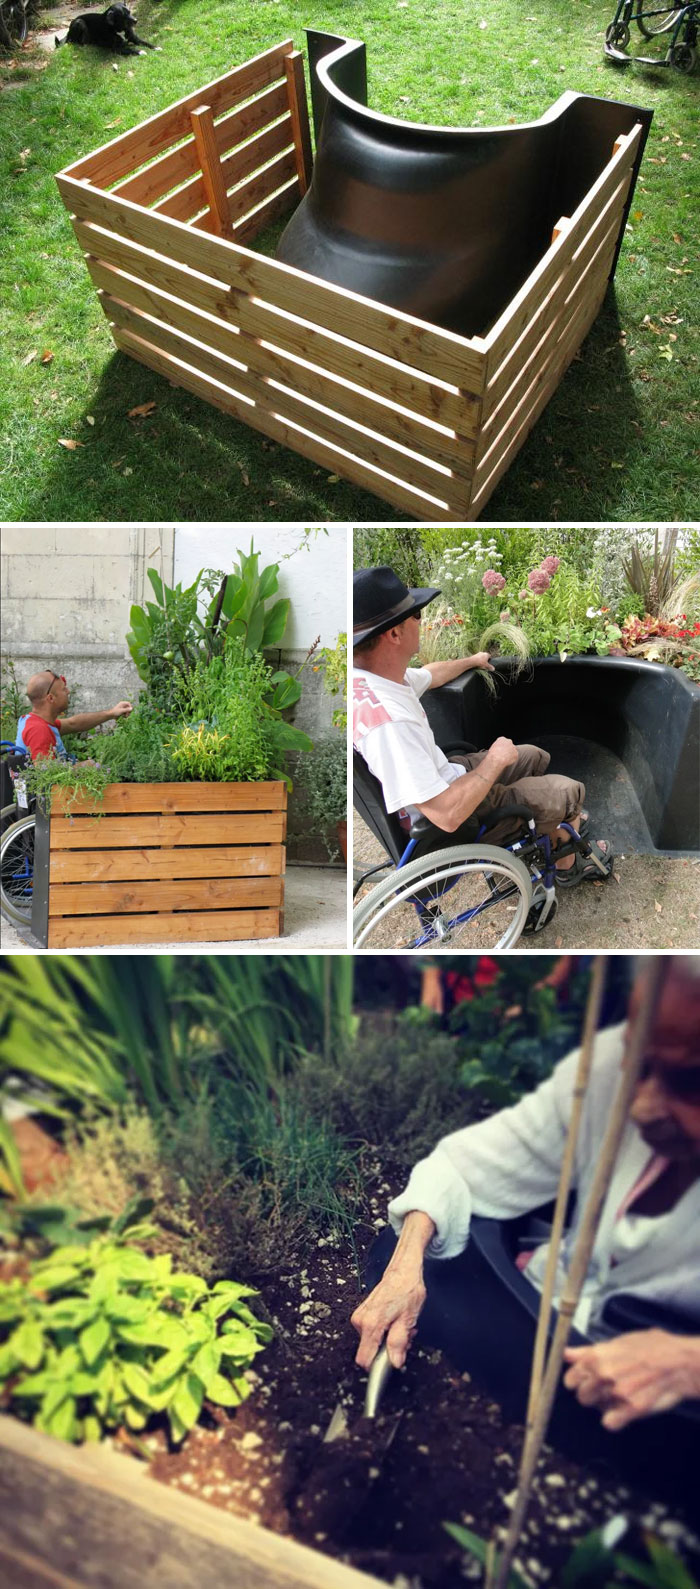 Jardinería accesible en silla de ruedas. Utilizado para terapia de jardín, rehabilitación, hospicio. Desarrollado en Douvres-La-Délivrande, Francia